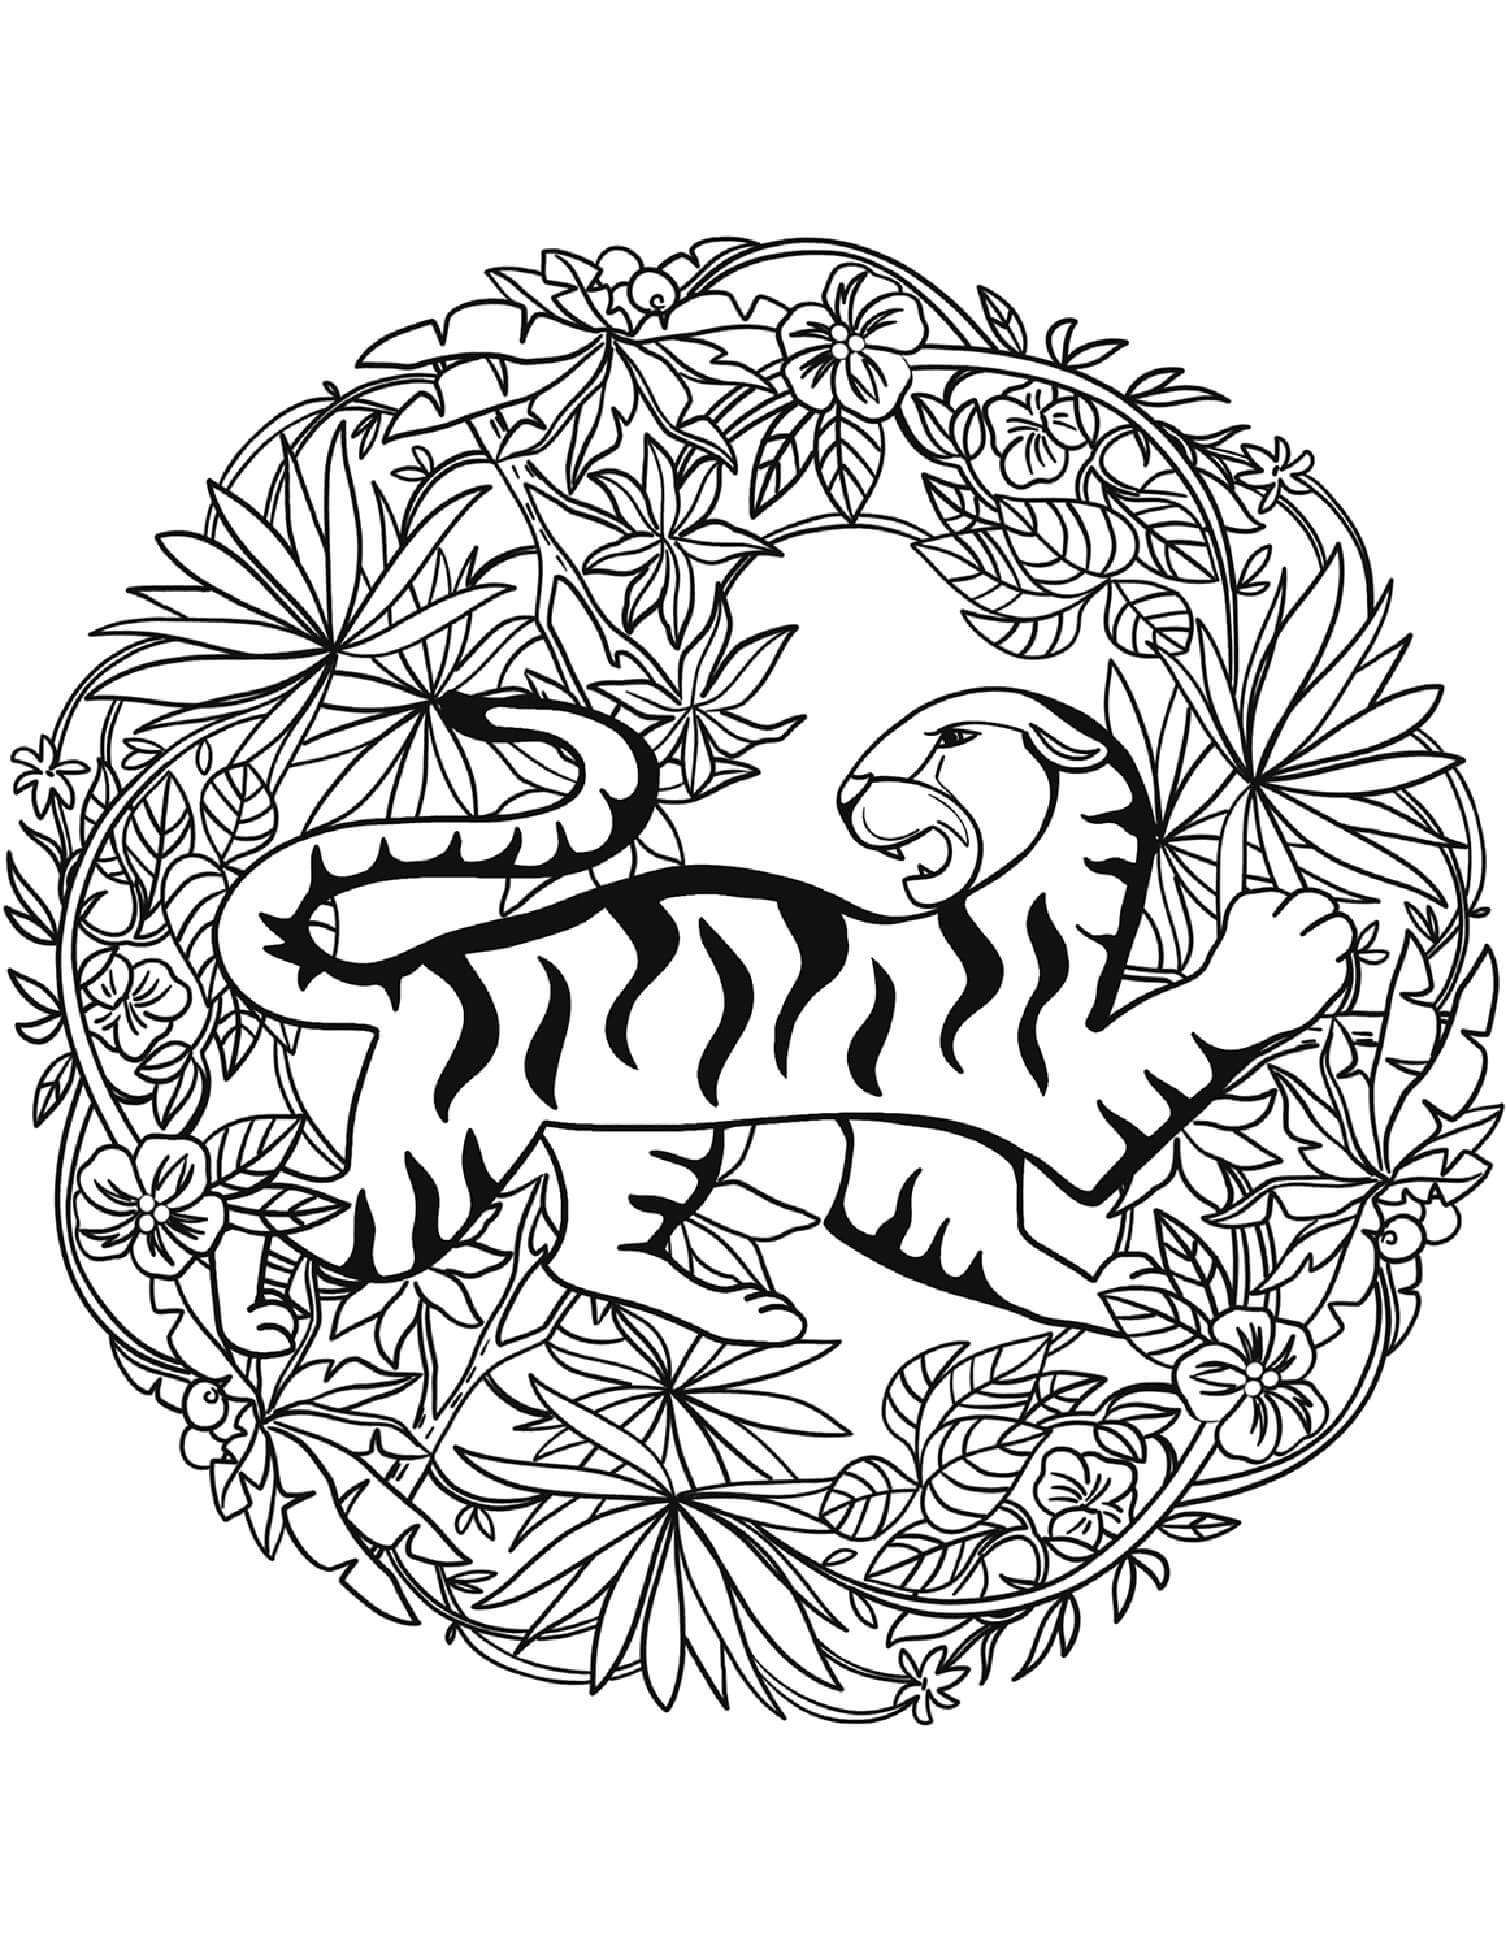 Mandala Tiger With Leaves Coloring Page Mandala